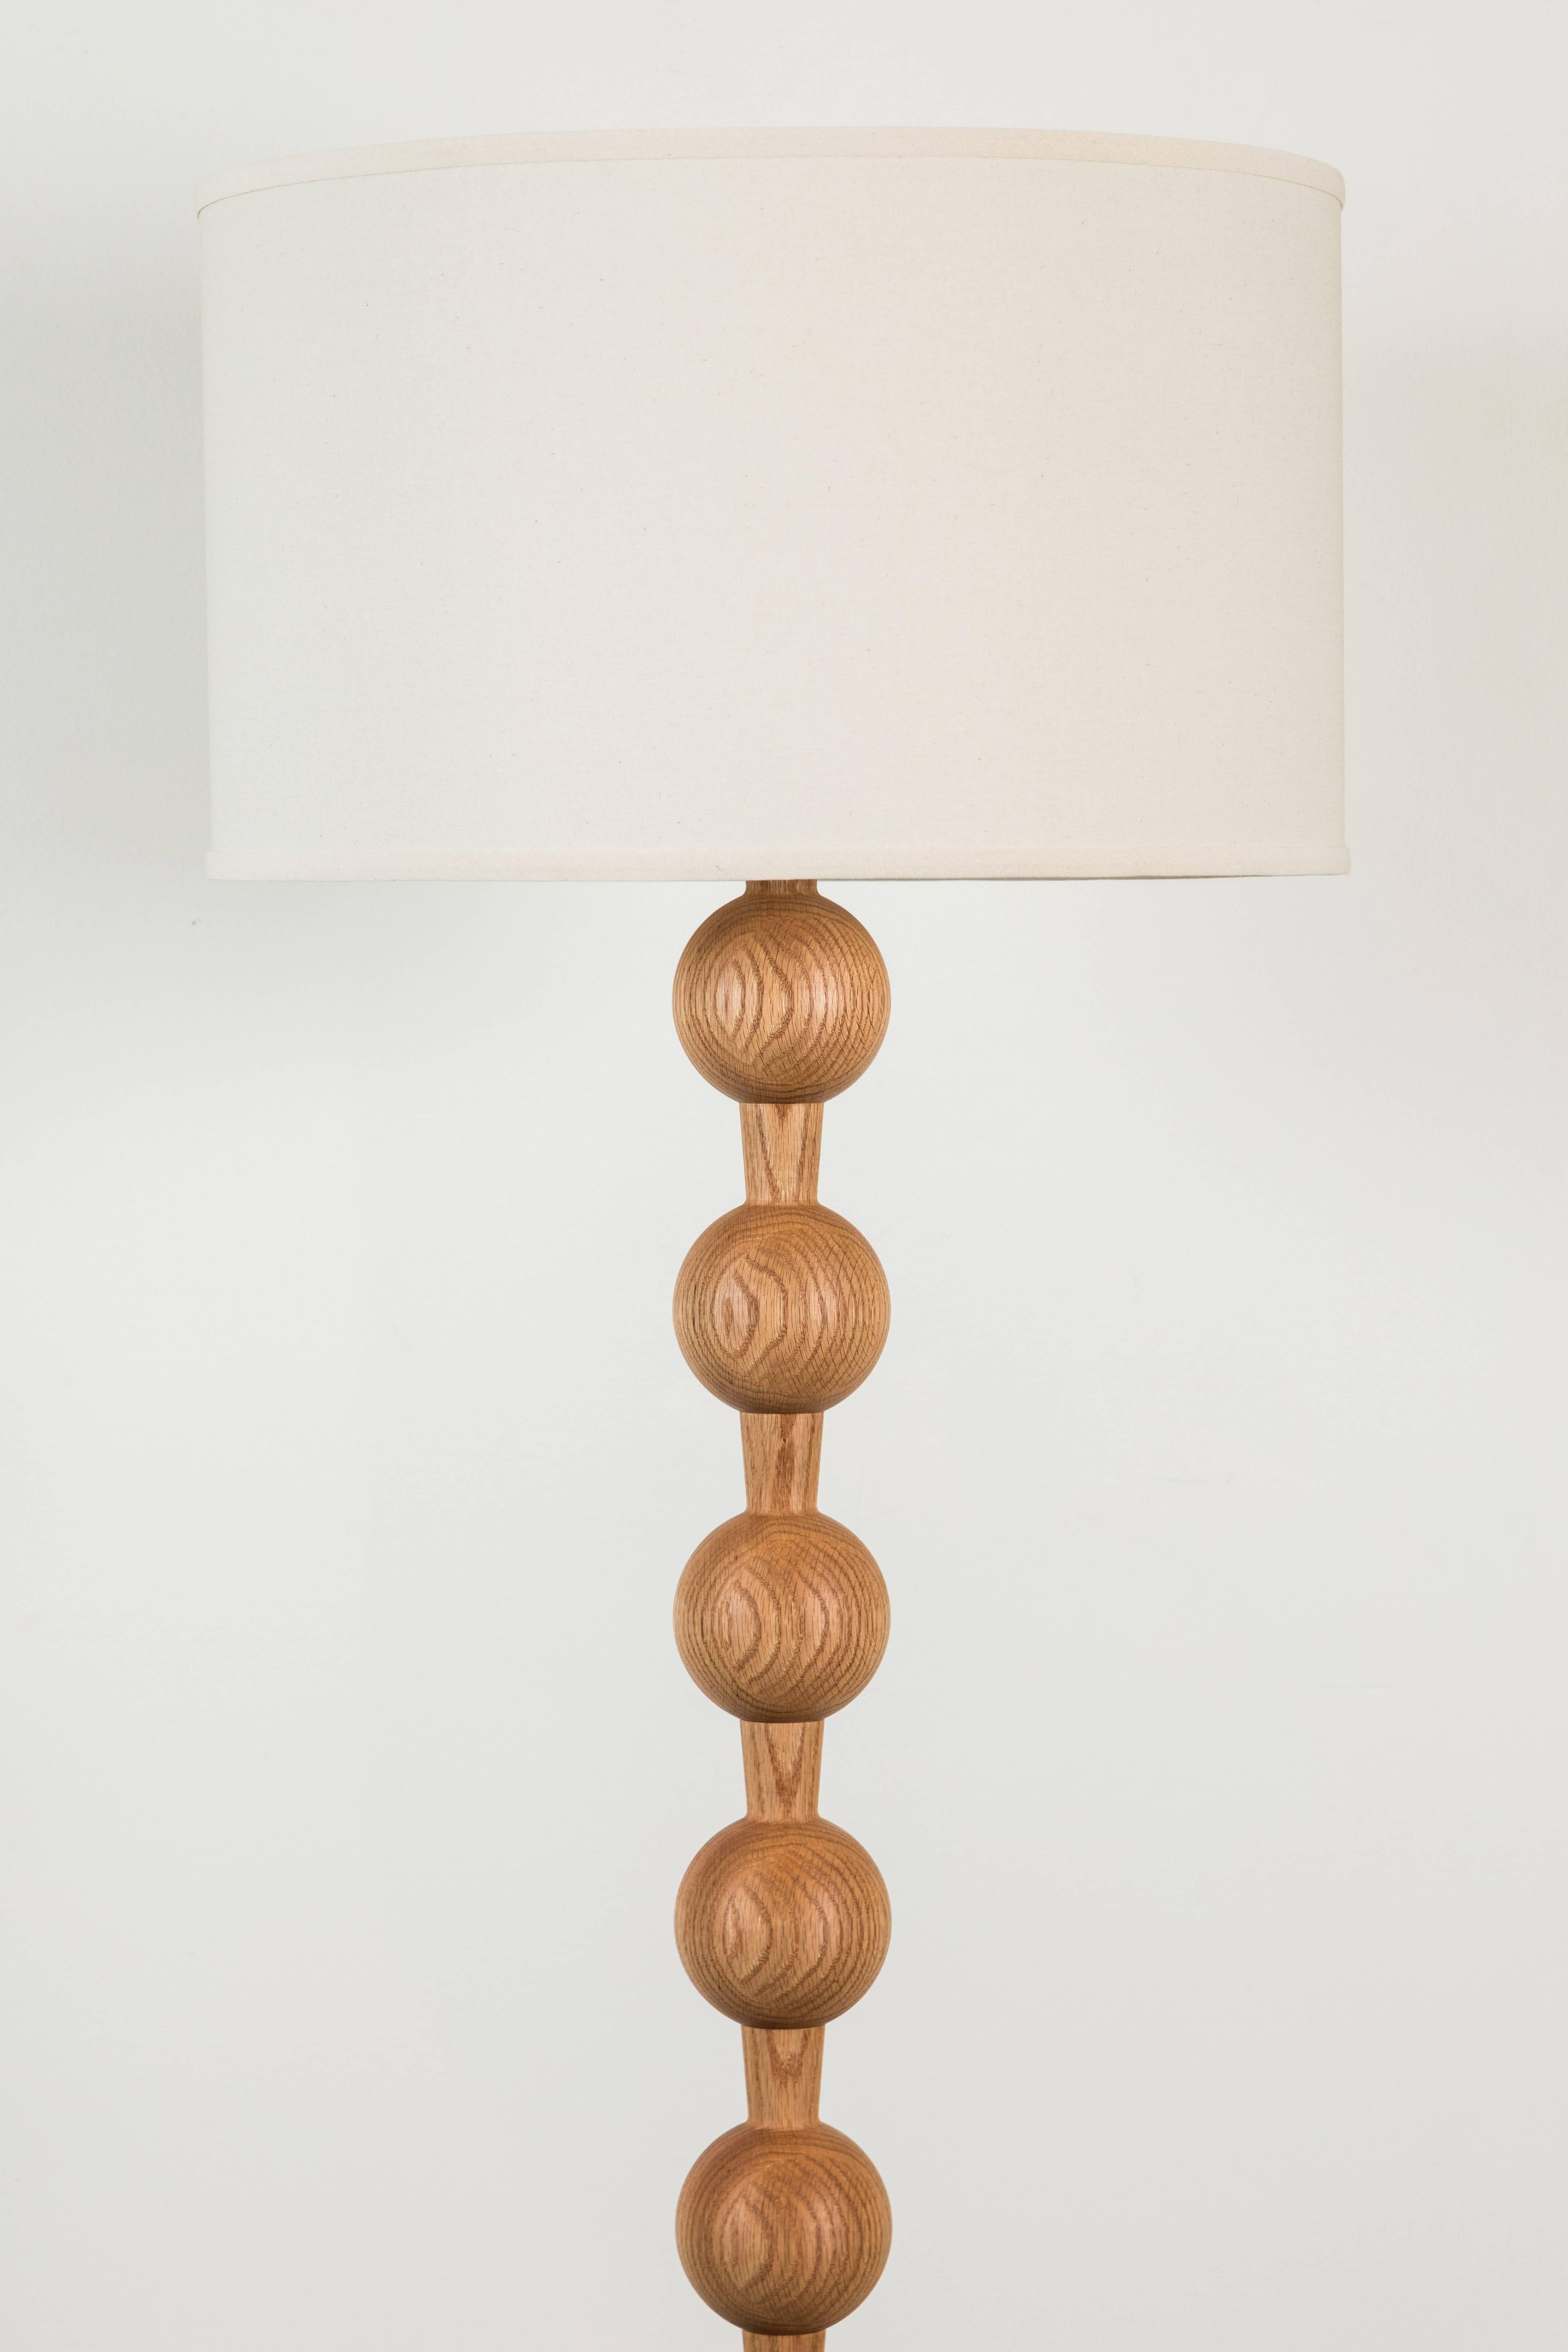 Hugo barbell floor lamp by Lostine.